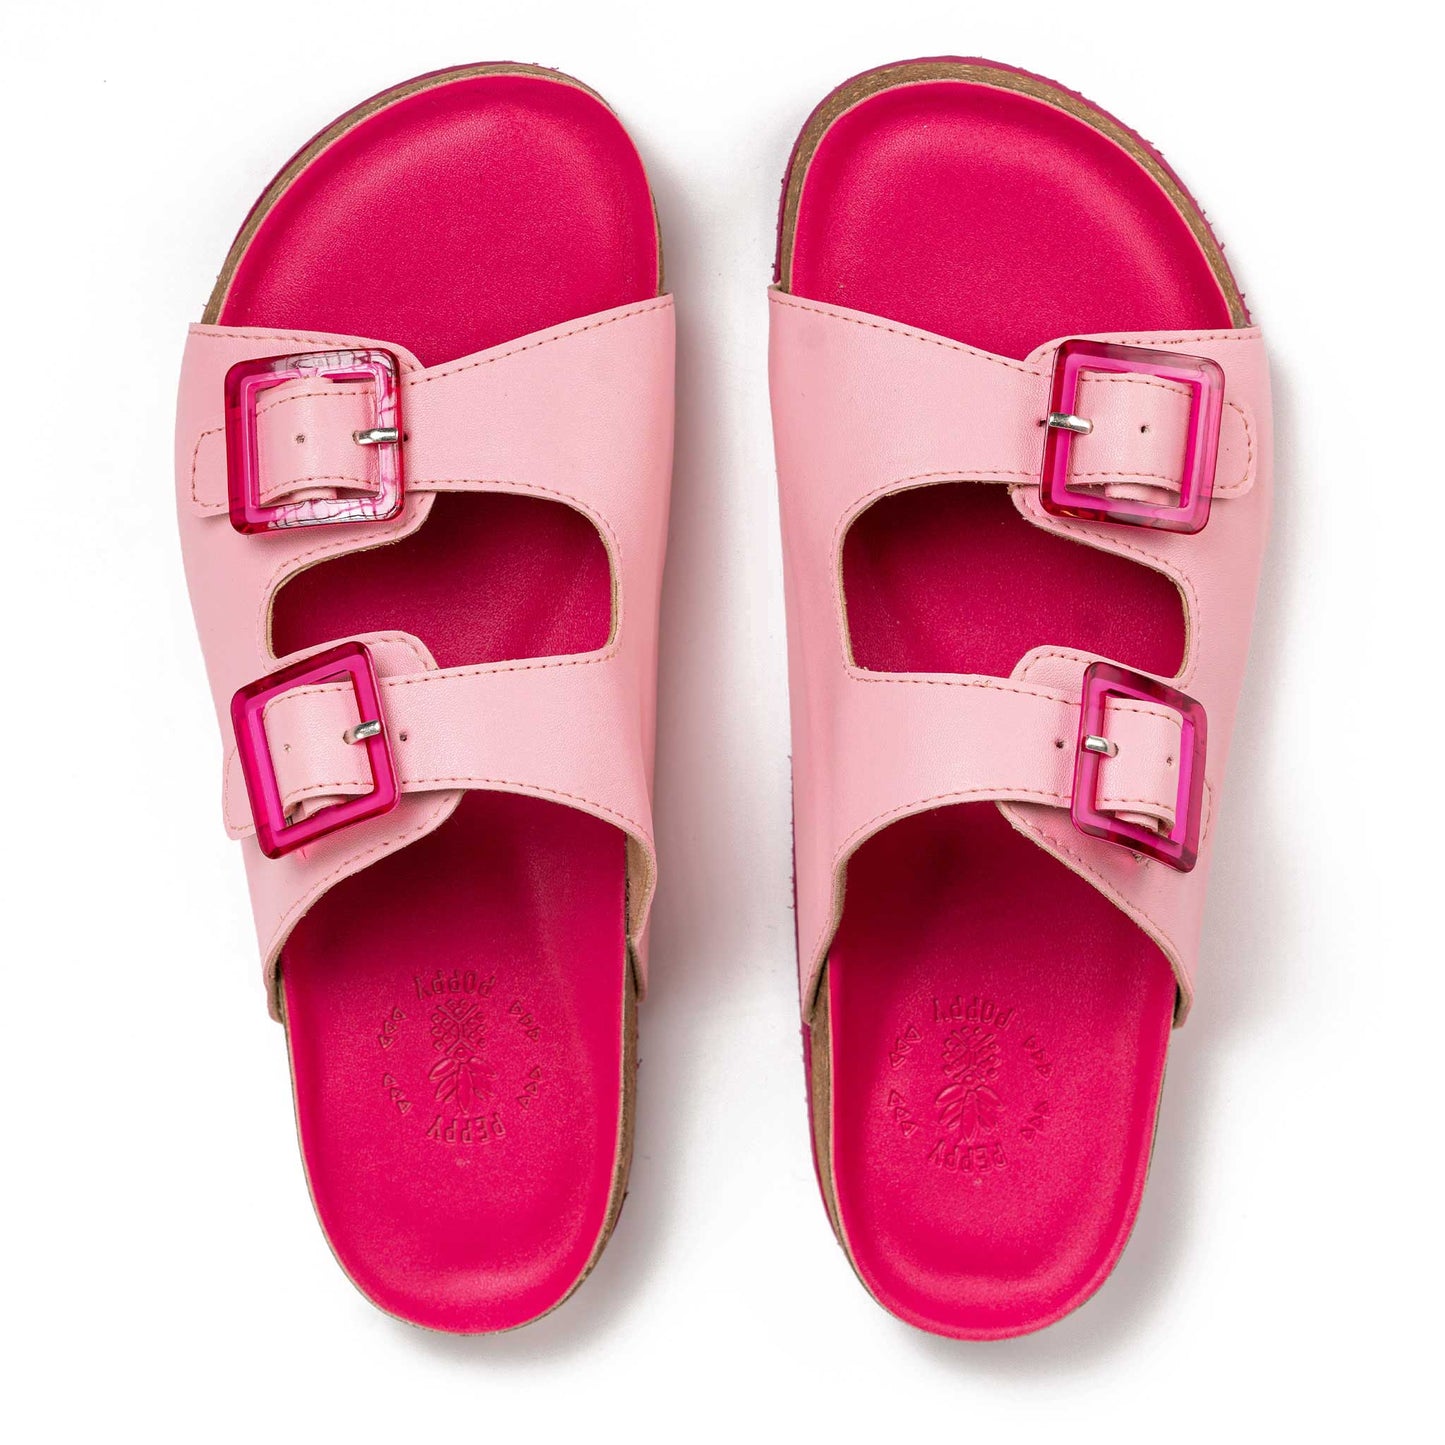 Buckled Cork Sandals - Barbie Pink